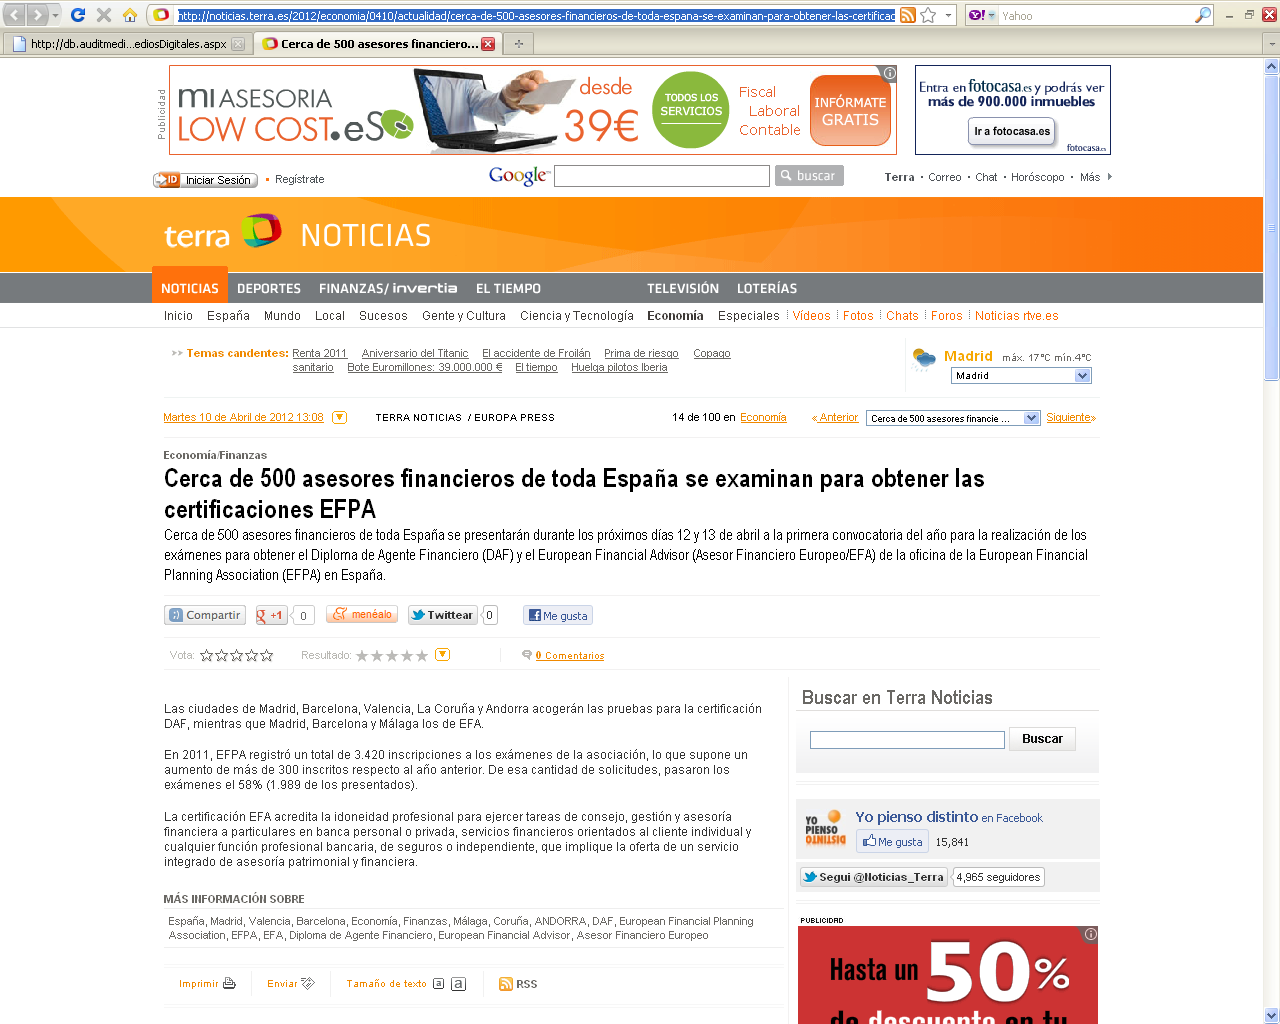 Medio: Terra Fecha: 10.04.2012 Cliente: EFPA España Link: http://noticias.terra.